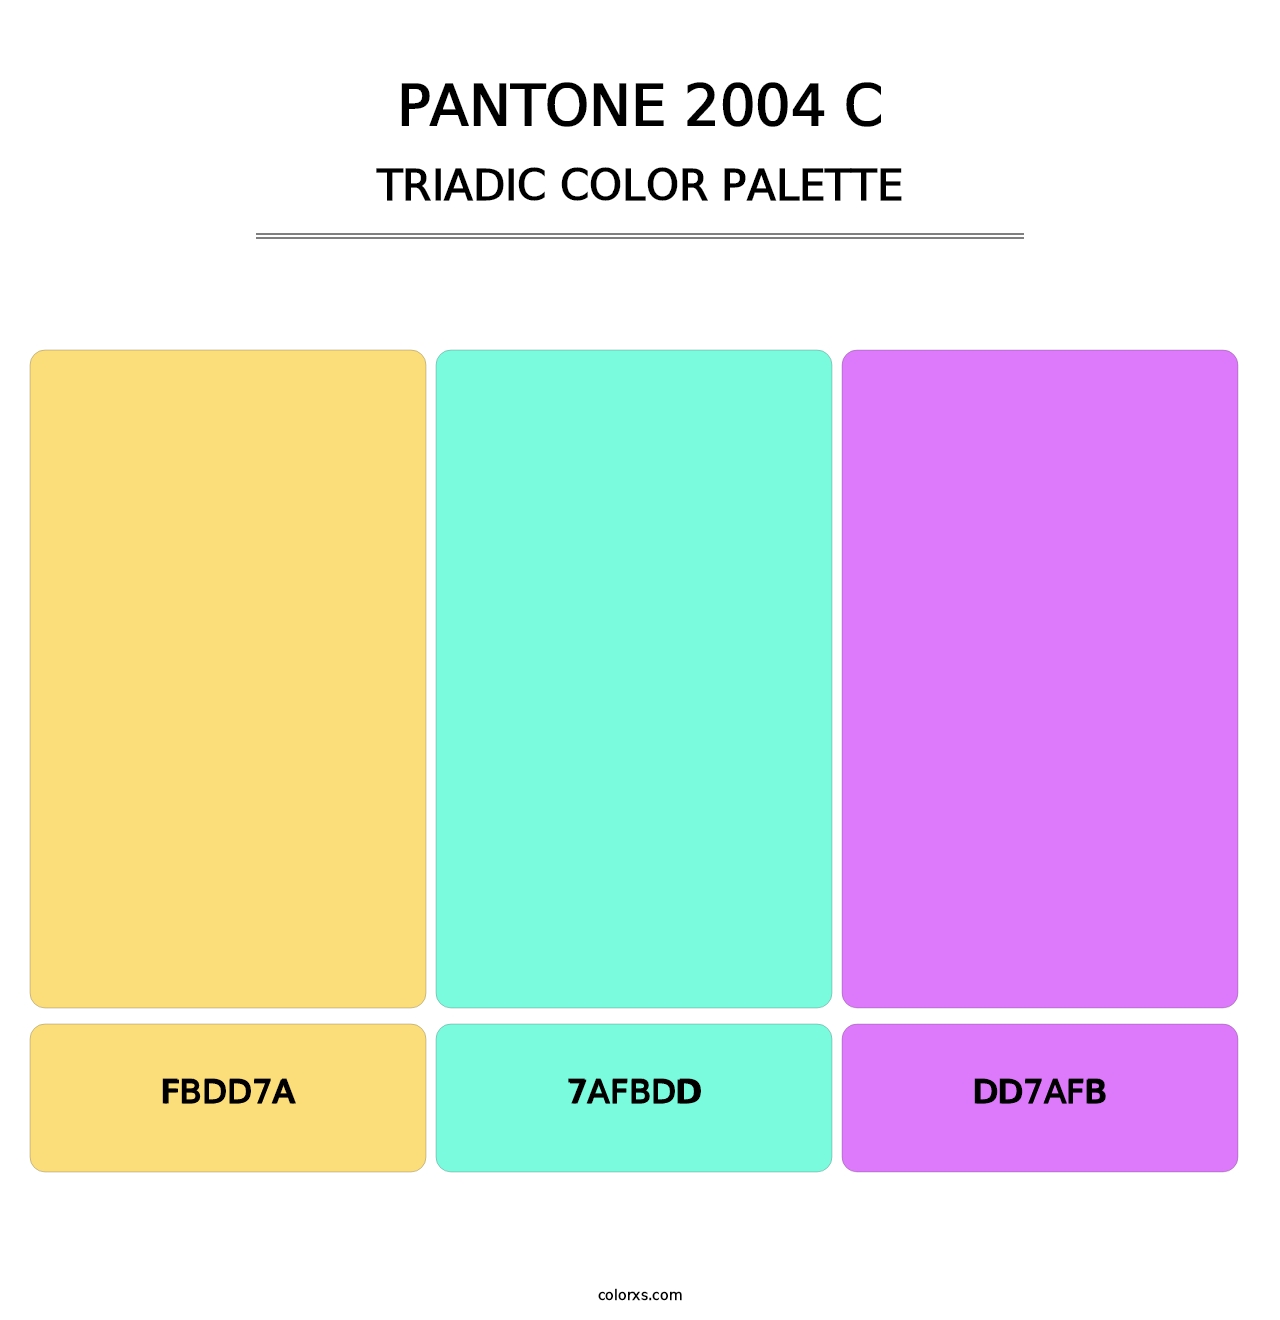 PANTONE 2004 C - Triadic Color Palette